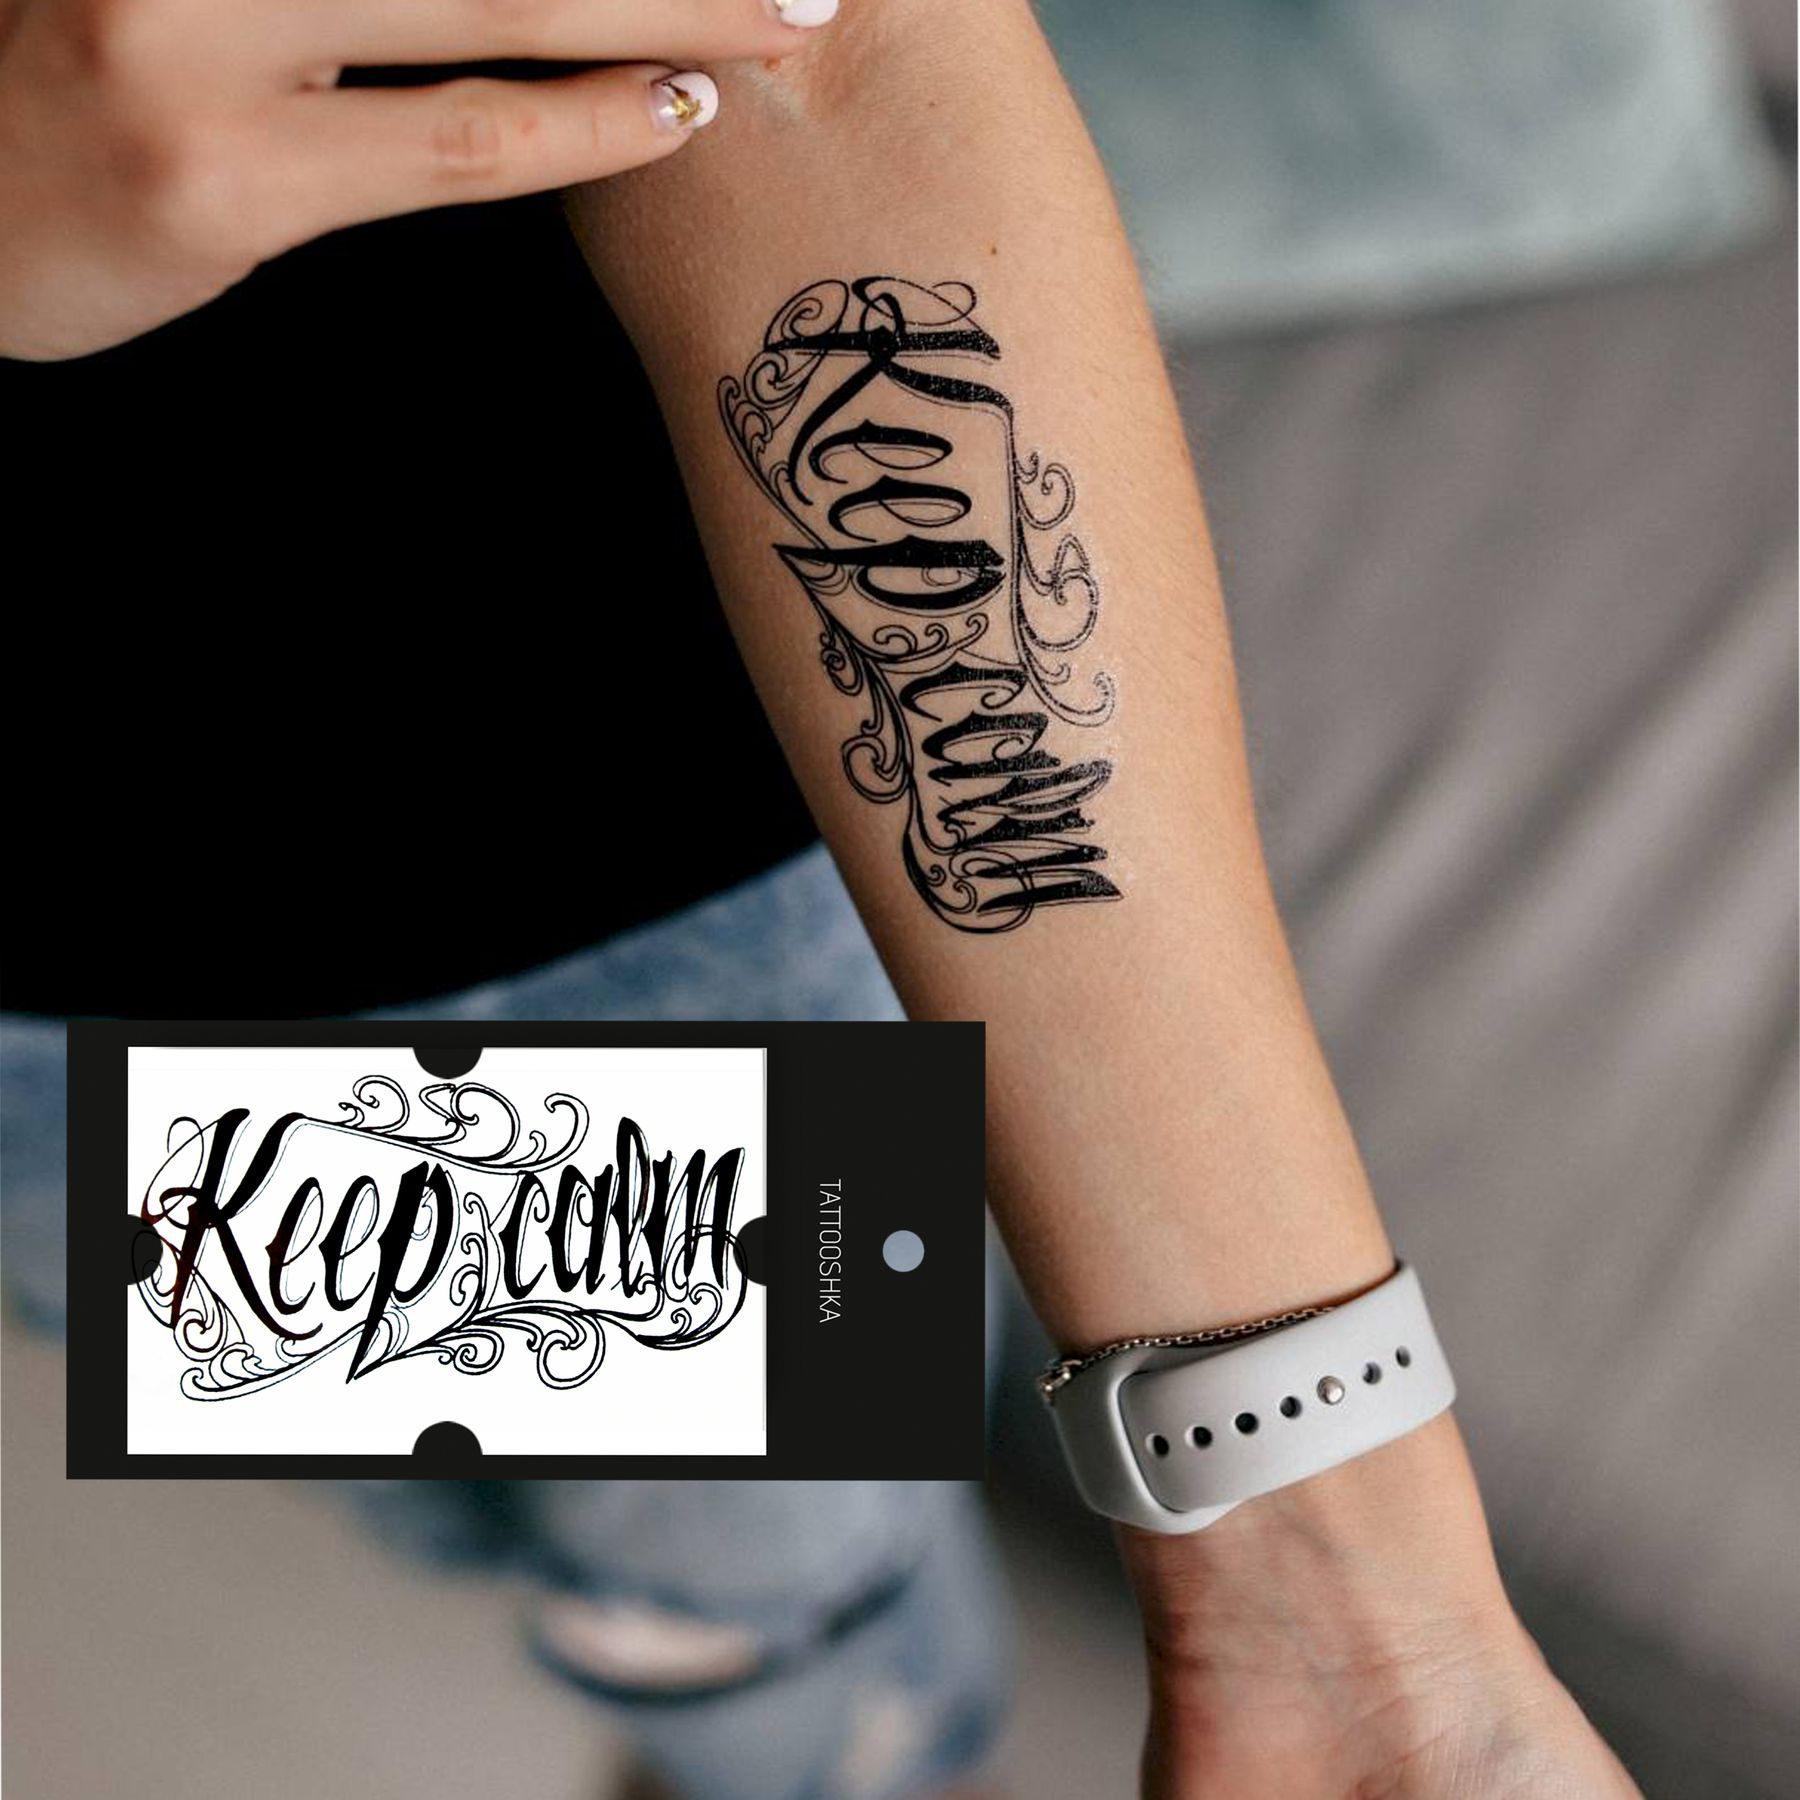 Keep Calm Monkey Tattoo Idea | Monkey tattoos, Small neck tattoos, Best  neck tattoos